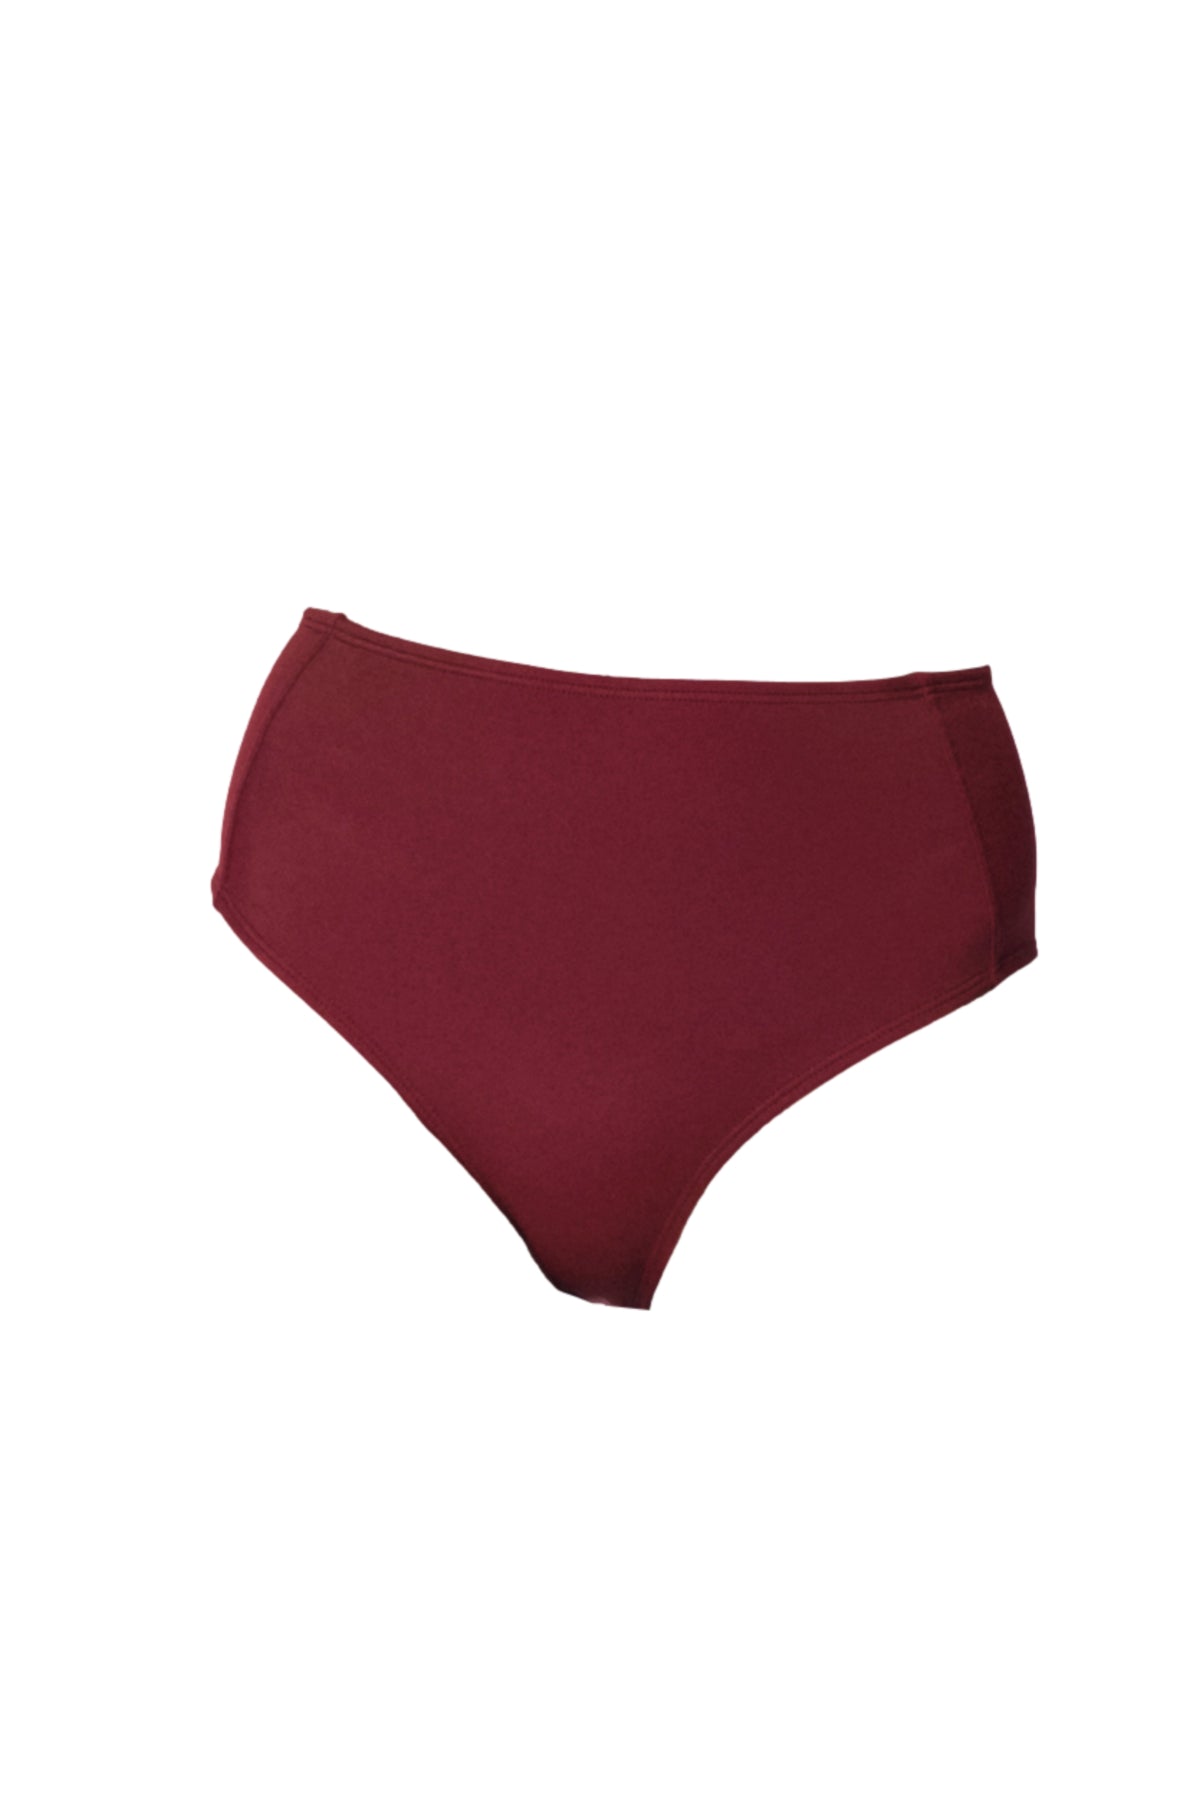 high waist burgundy red bikini bottoms wedding swimwear koraru sustainable swimwear brand 